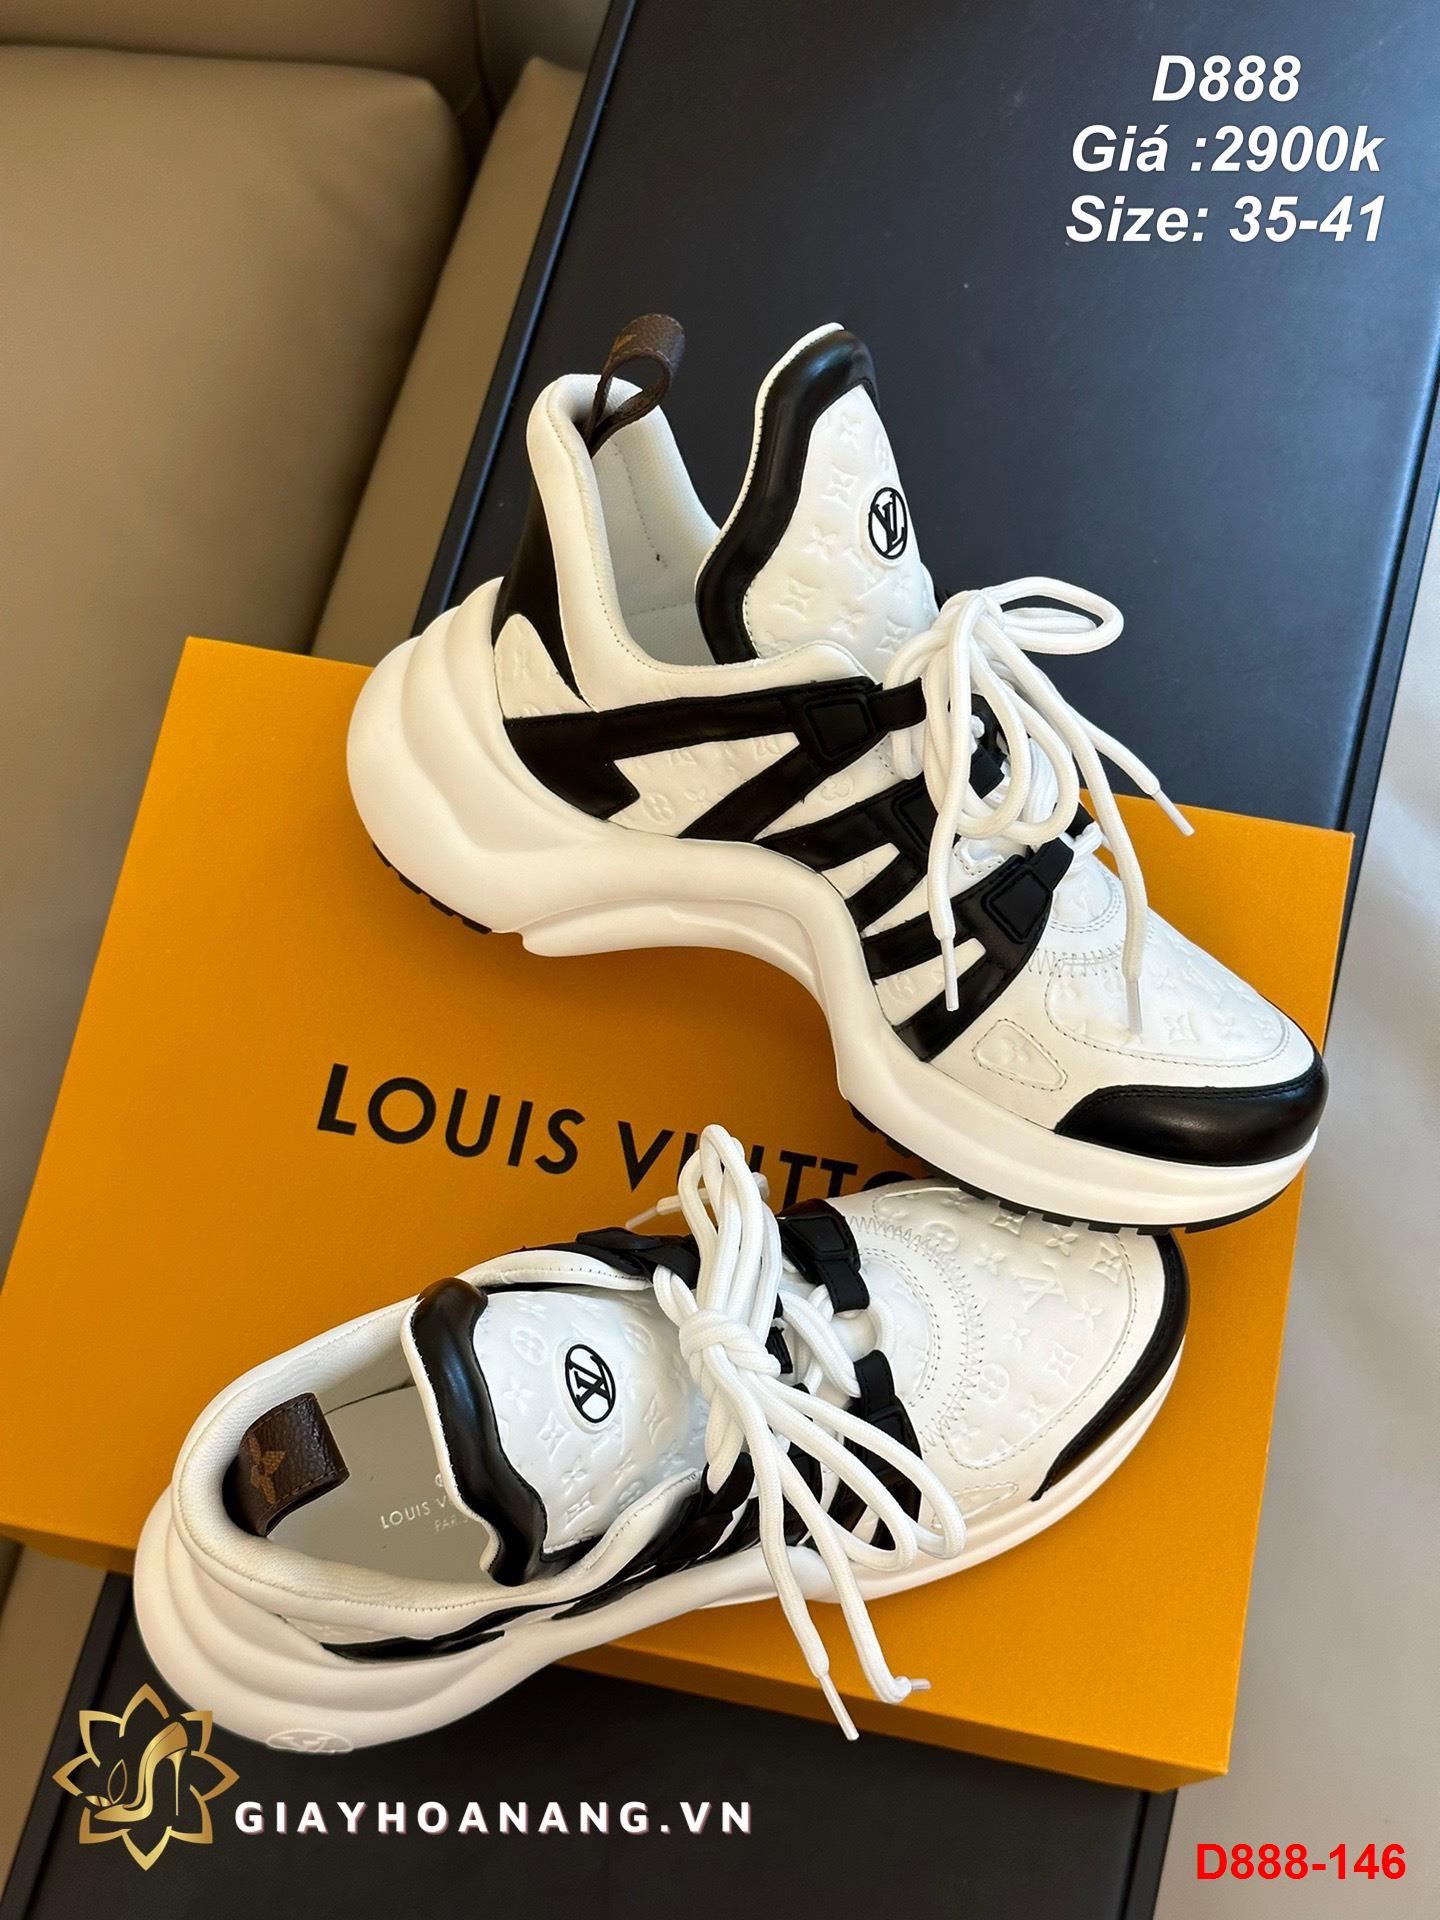 D888-146 Louis Vuitton giày thể thao siêu cấp